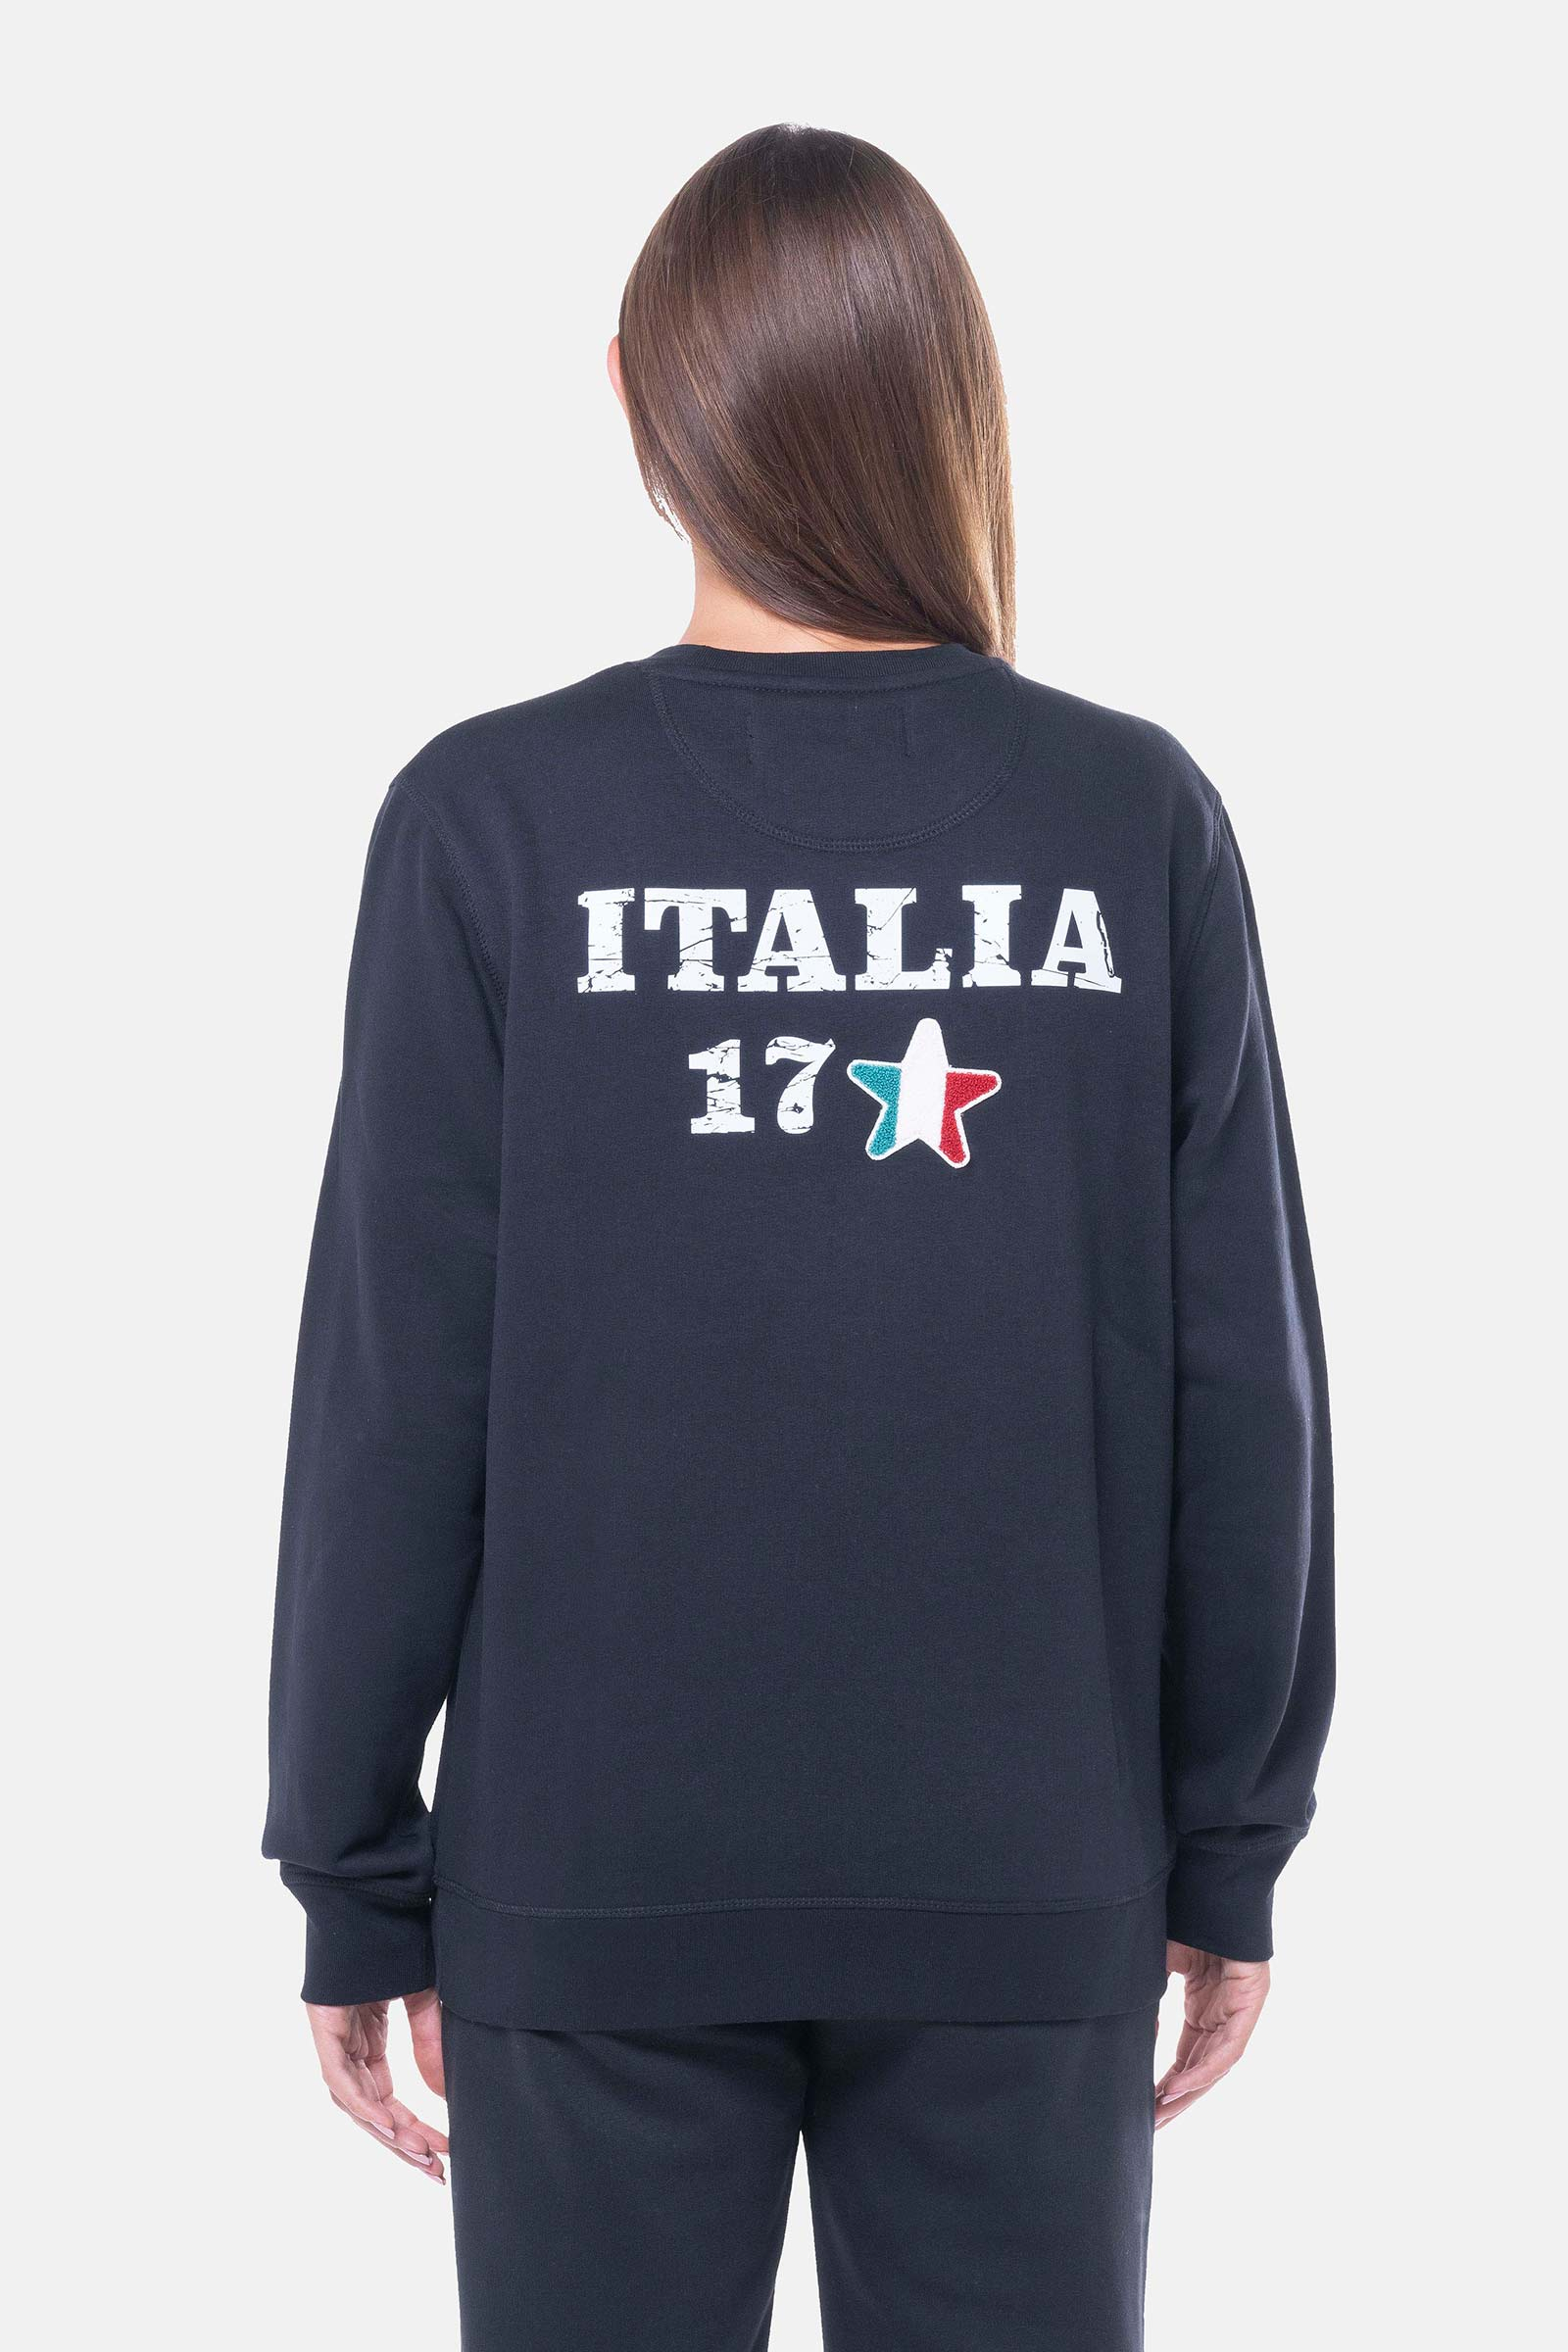 ITALIA 17 SWEATSHIRT - BLACK - Hydrogen - Luxury Sportwear